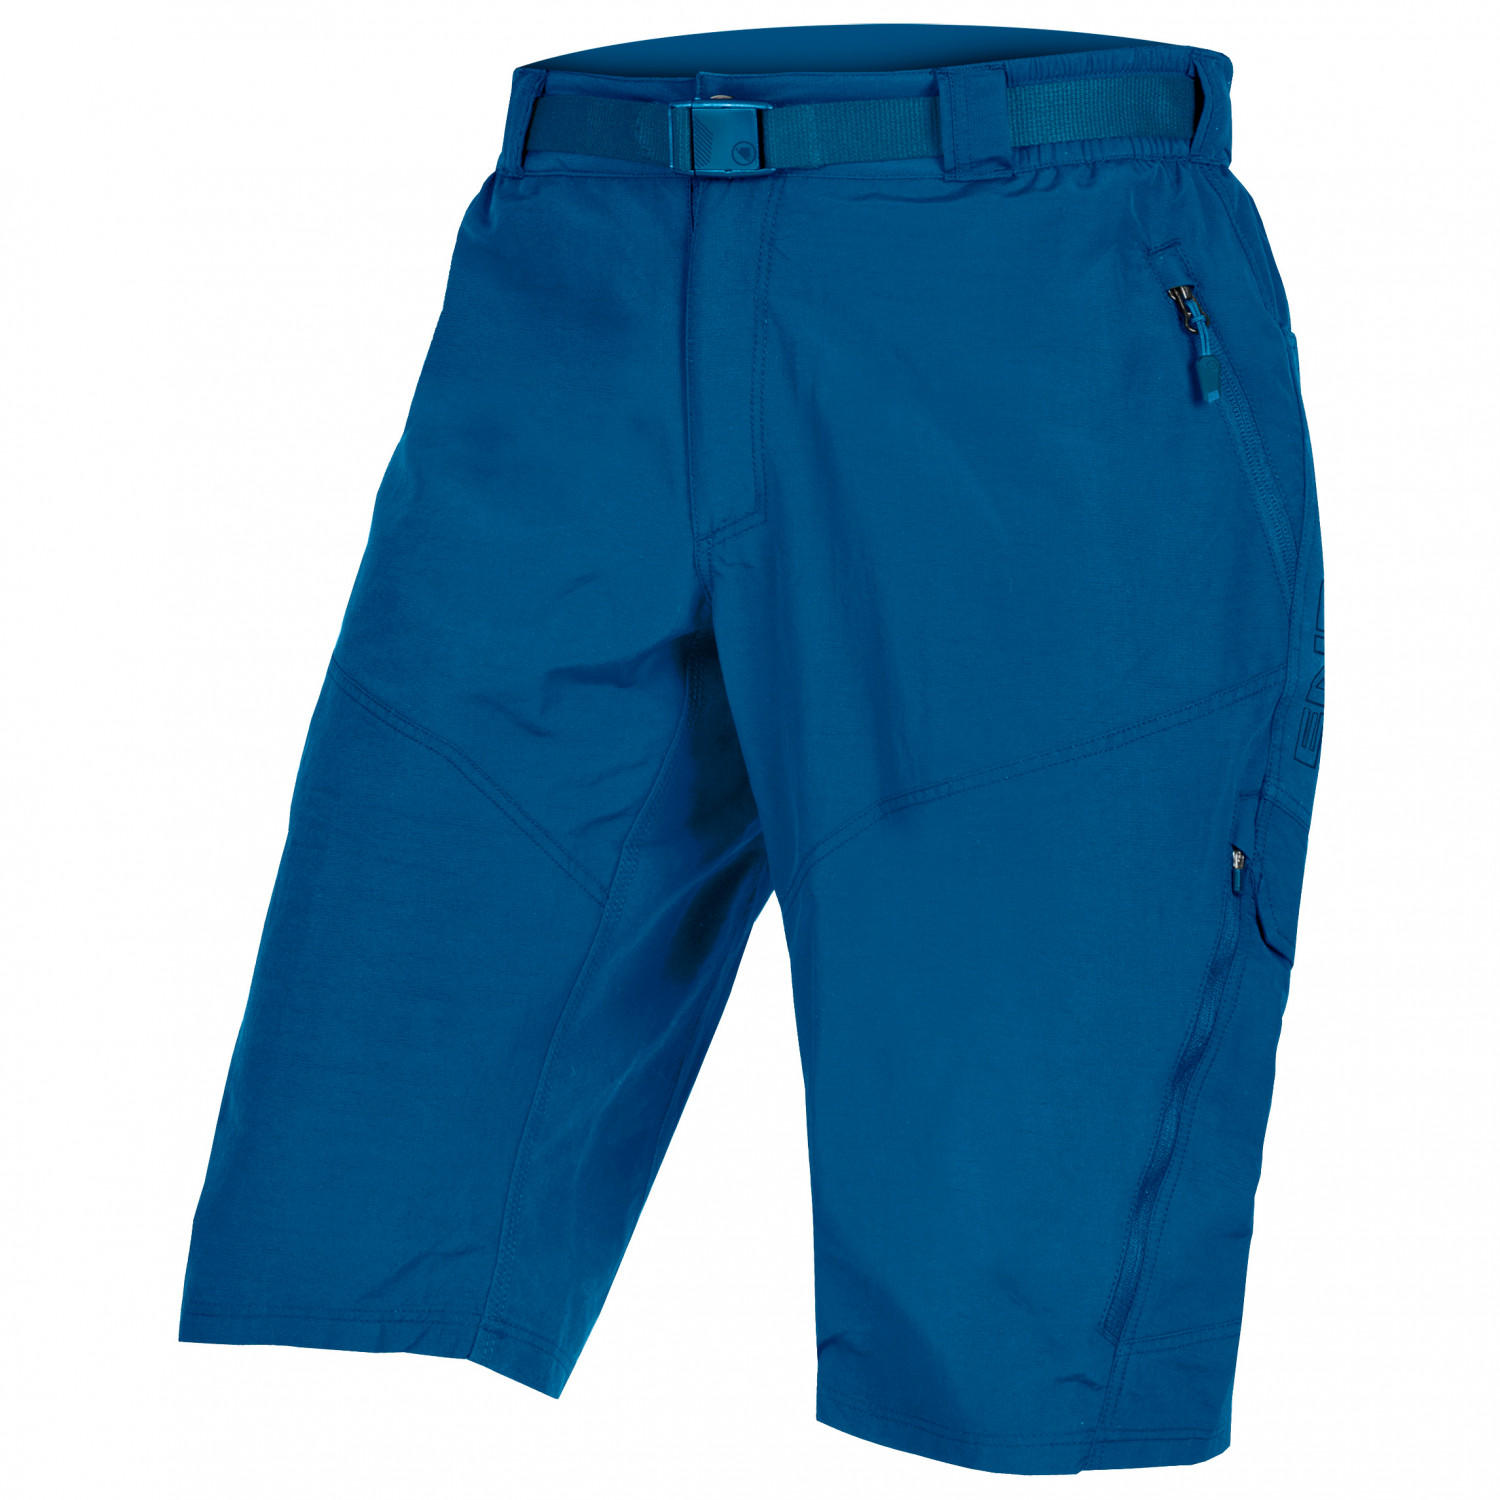 Велосипедные шорты Endura Hummvee Short mit Innenhose, цвет Blueberry